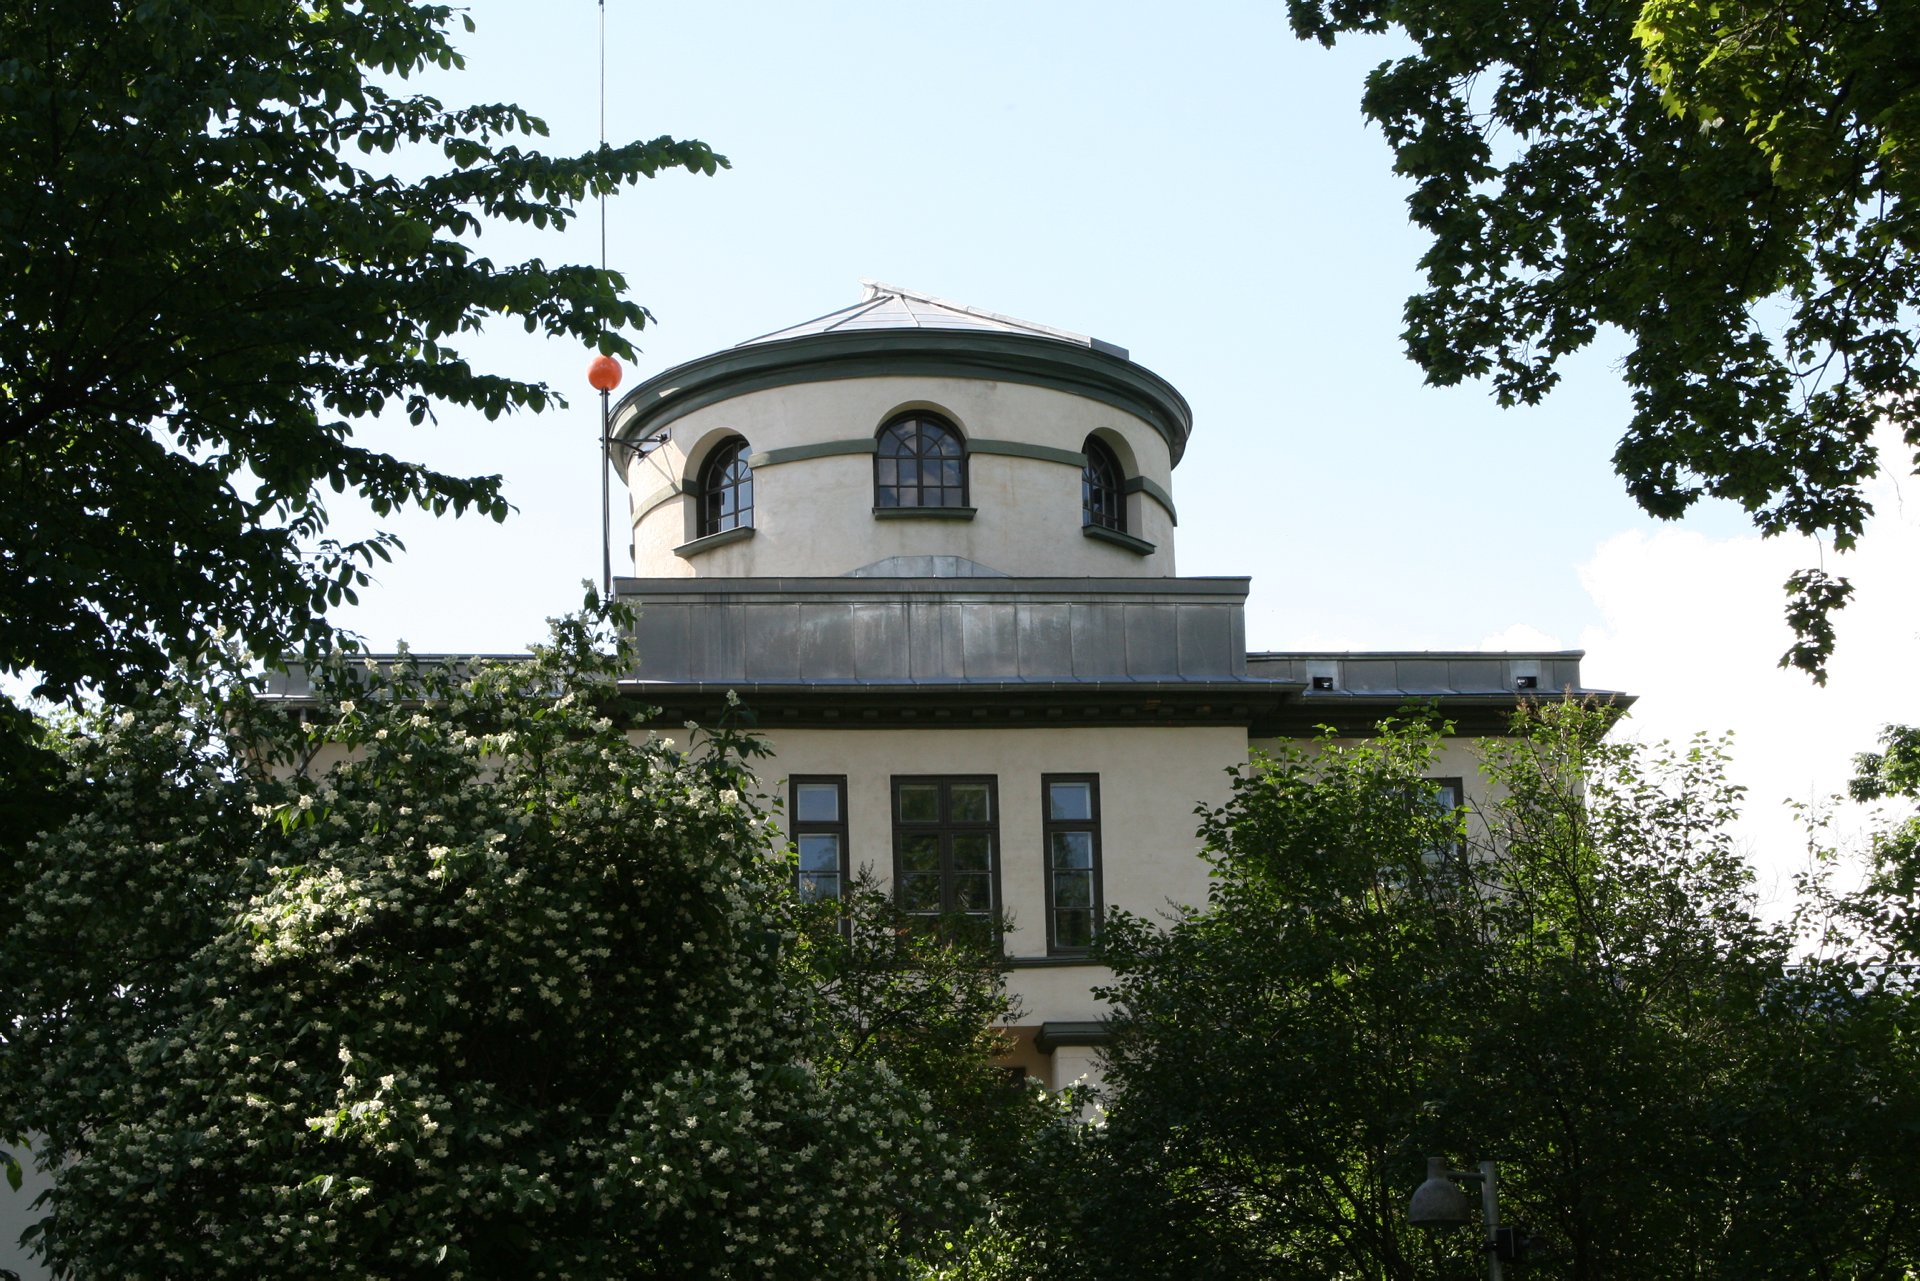 Observatoriet (Observatoriegaten 1, Oslo)